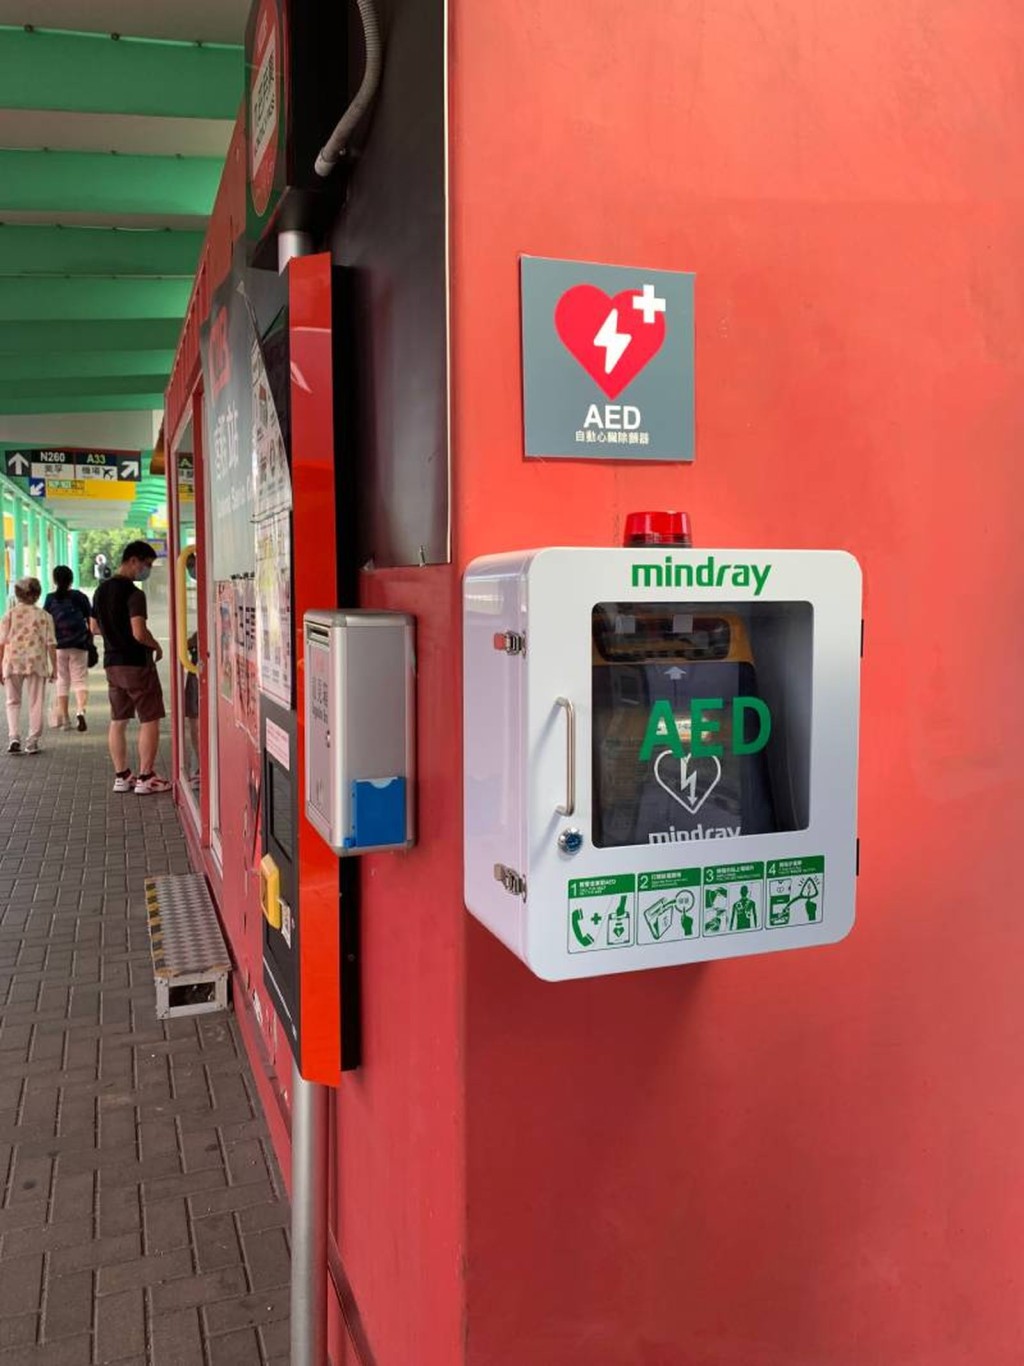 本港部分人流密度高的巴士站已设置AED。资料图片